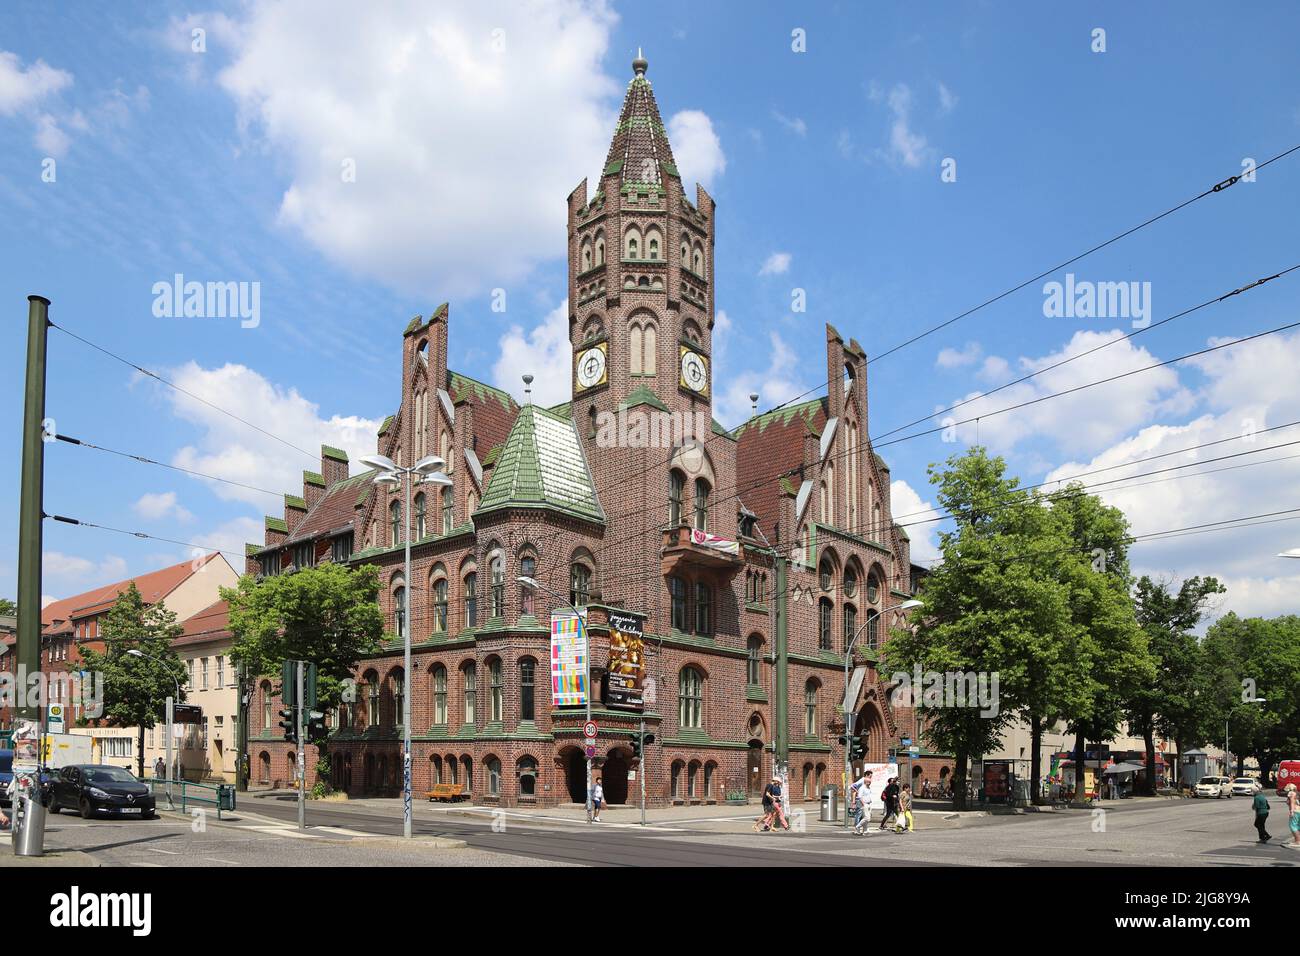 Germany, Brandenburg, Potsdam, Babelsberg City Hall Stock Photo